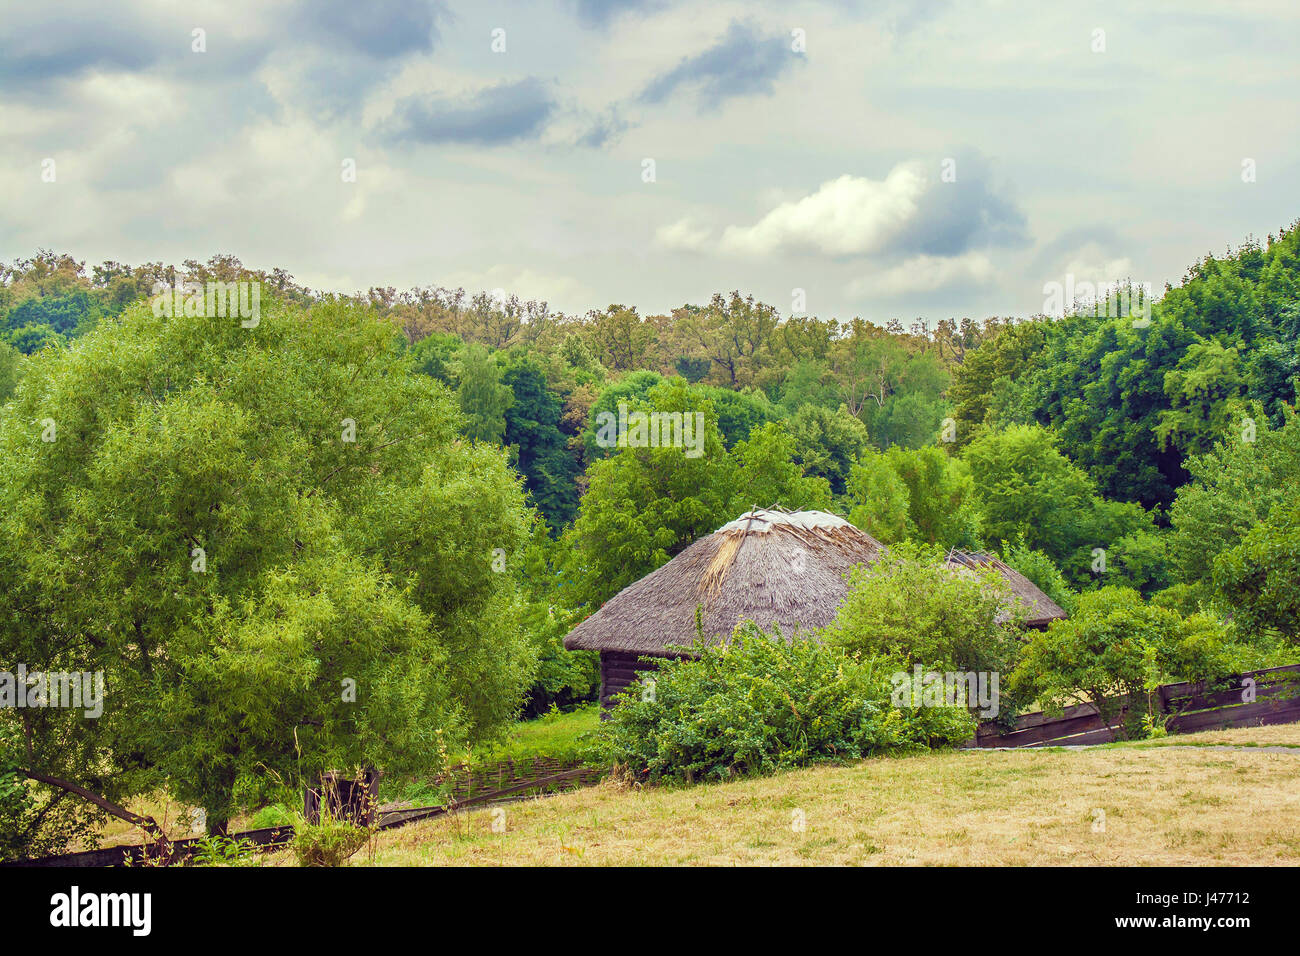 Droit de la chaume cabane ukrainien sur le bord de la forêt Banque D'Images